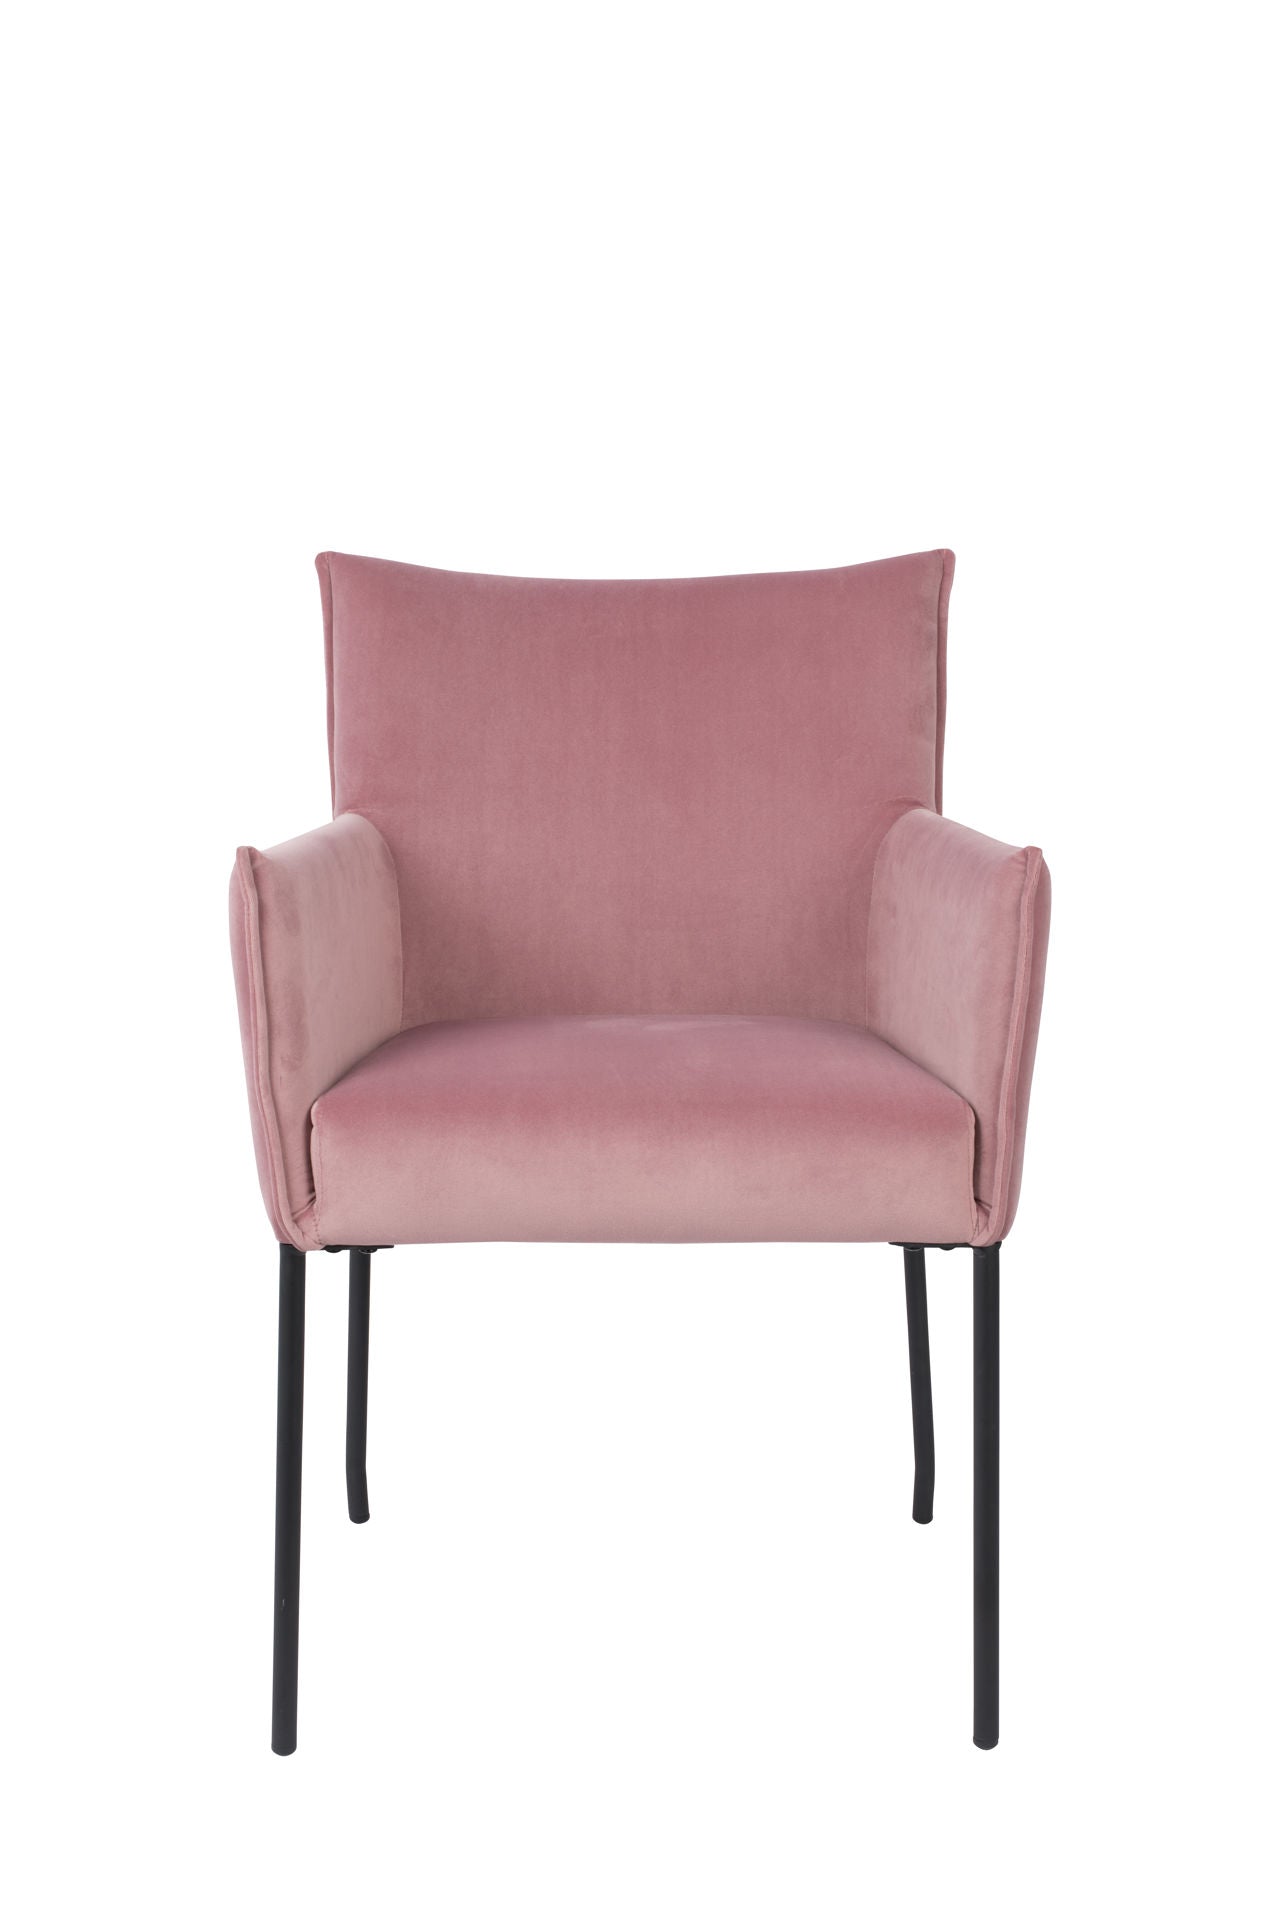 Nancy's Lucas Chair - Scandinave - Rose - Velours, Bois de Pin, Acier - 64 cm x 59 cm x 86,5 cm